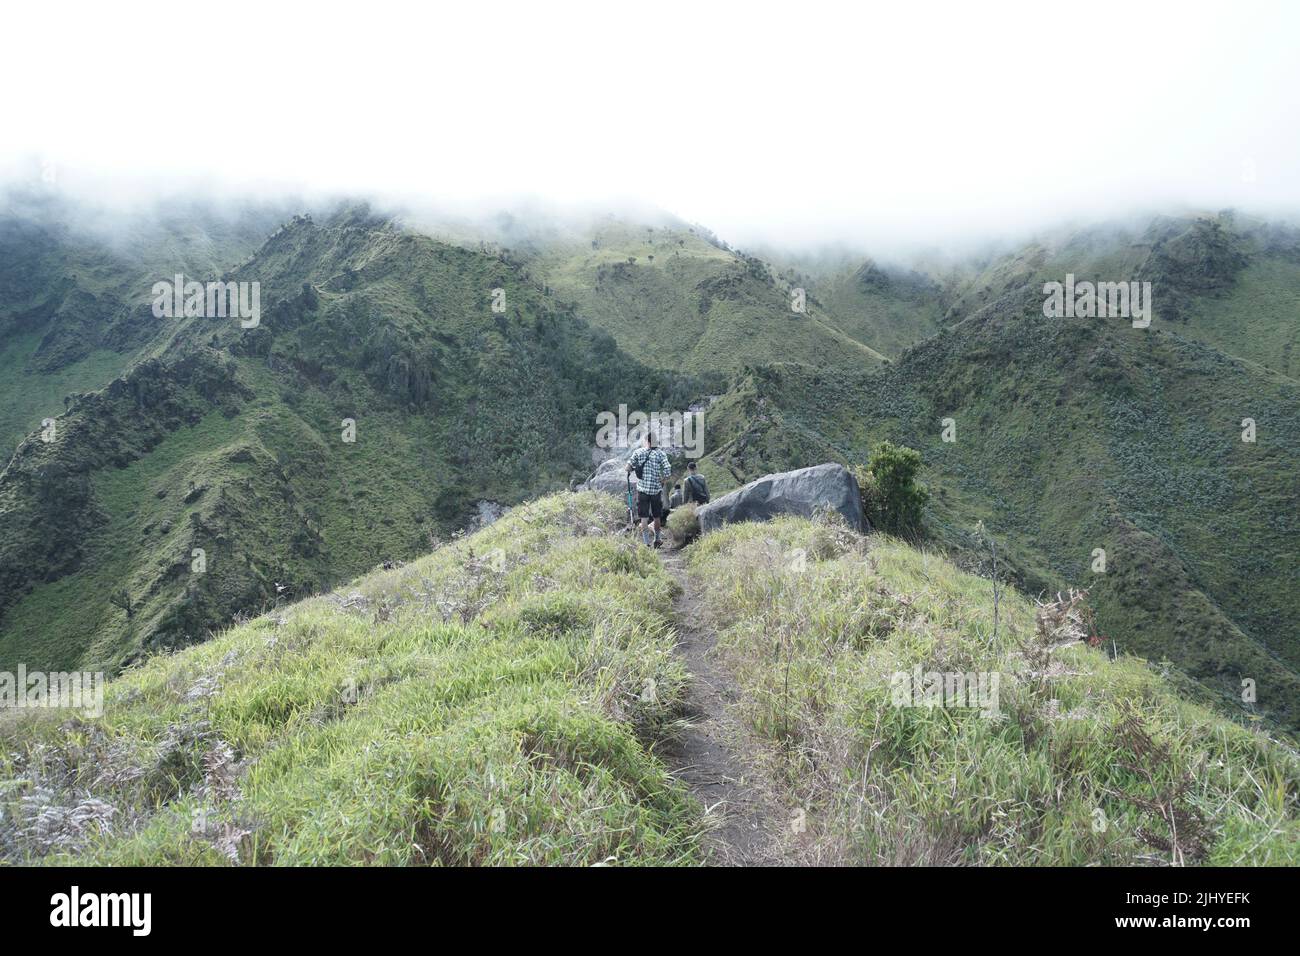 Langhaariger Junge im Hintergrund, in Wolken gehüllte grüne Berge, indonesische Stock-Fotografie Stockfoto